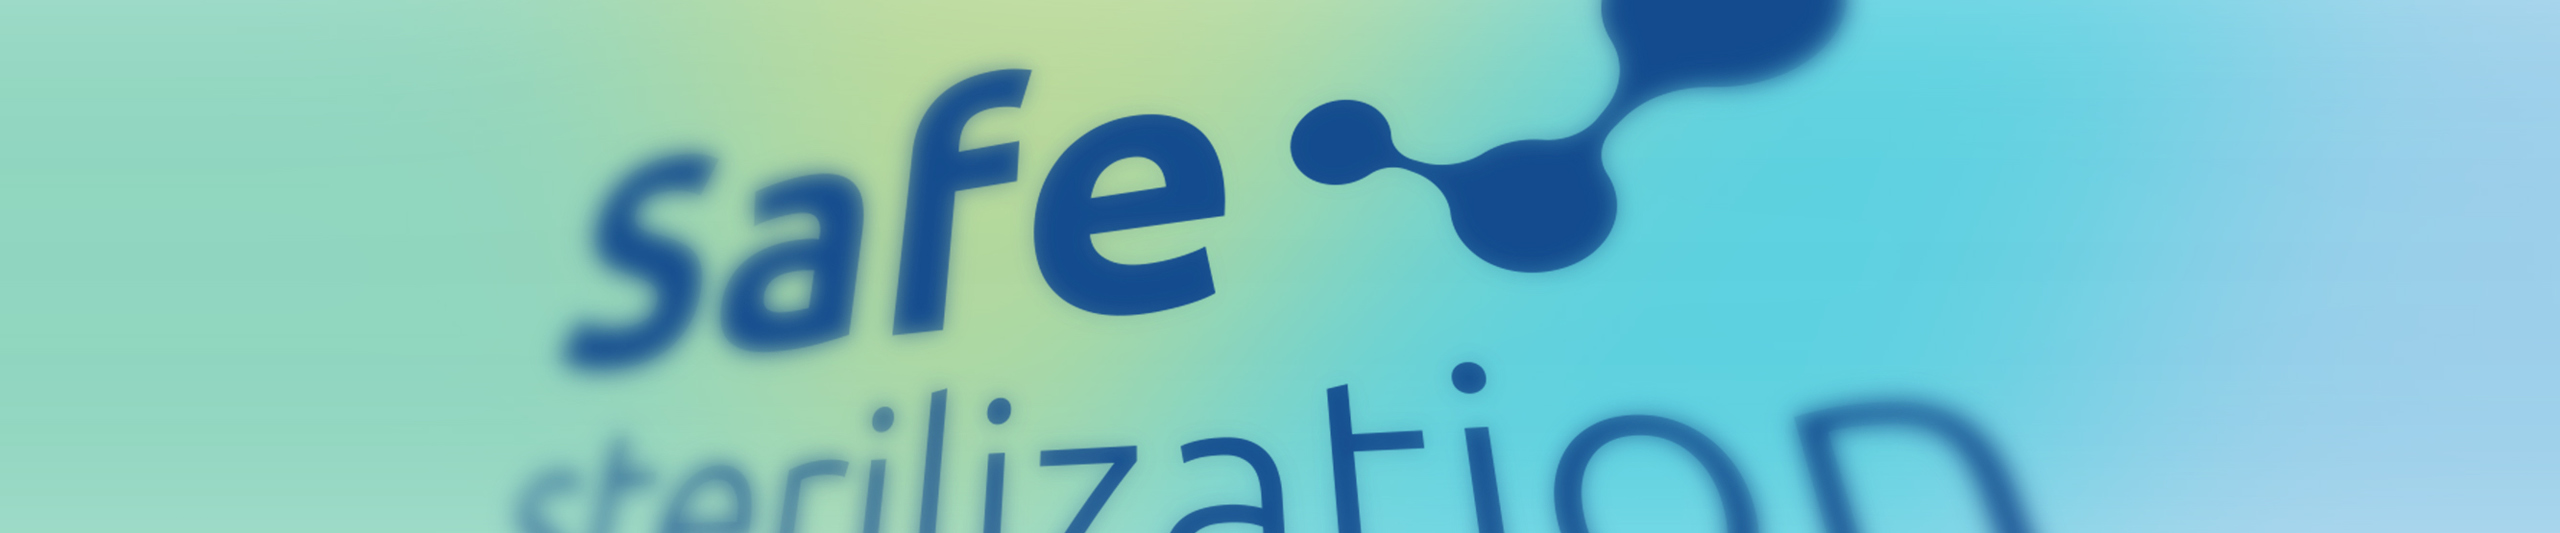 Safe Sterilization logo 4